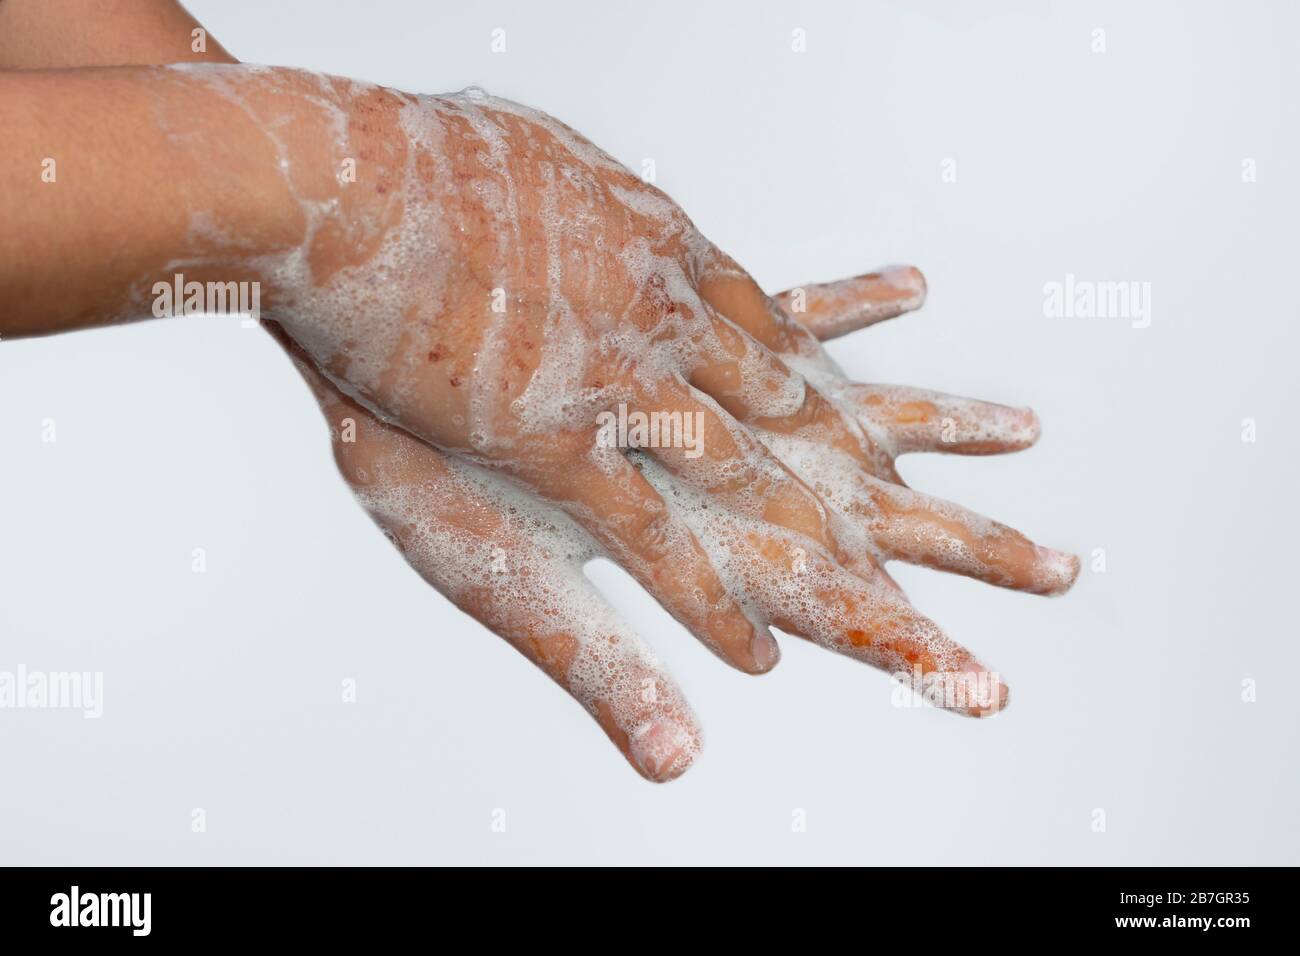 Une fille asiatique se laver les mains avec du savon isolé avec fond blanc. Concept d'hygiène.pour éviter le virus corona (covid-19). Mise au point sélective. Banque D'Images